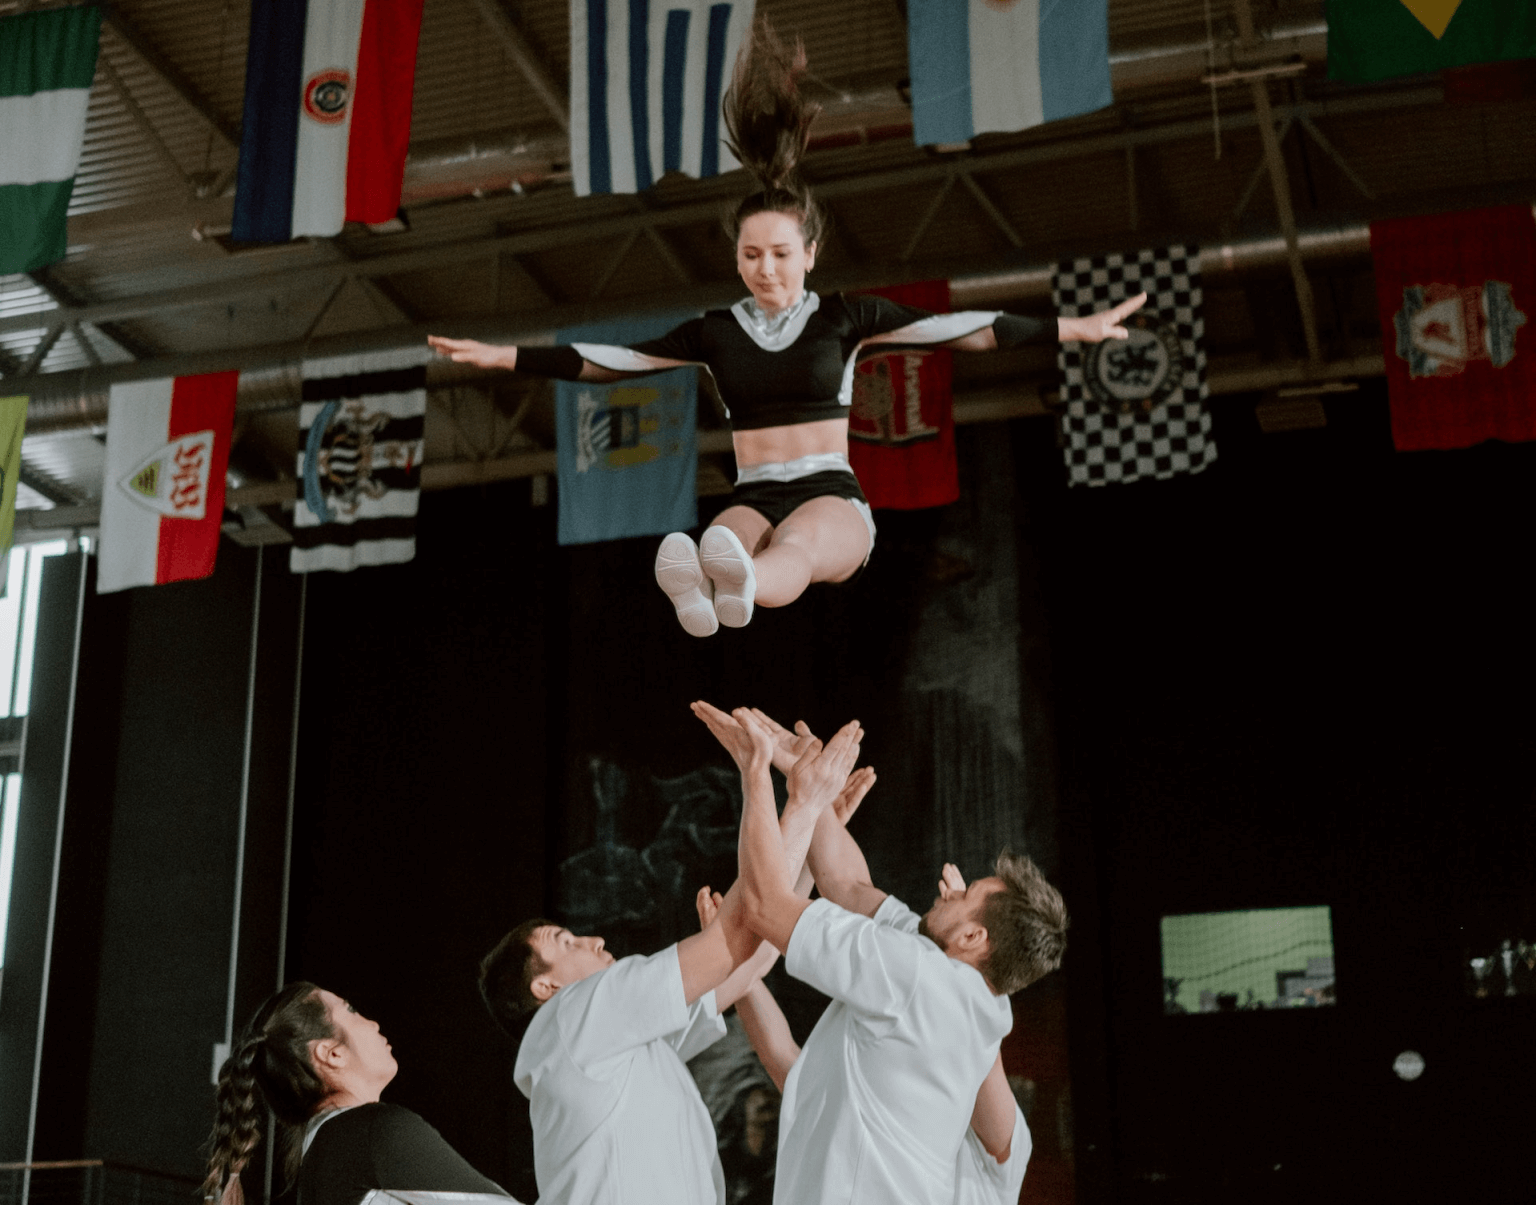 Cheerleader soaring through the air.